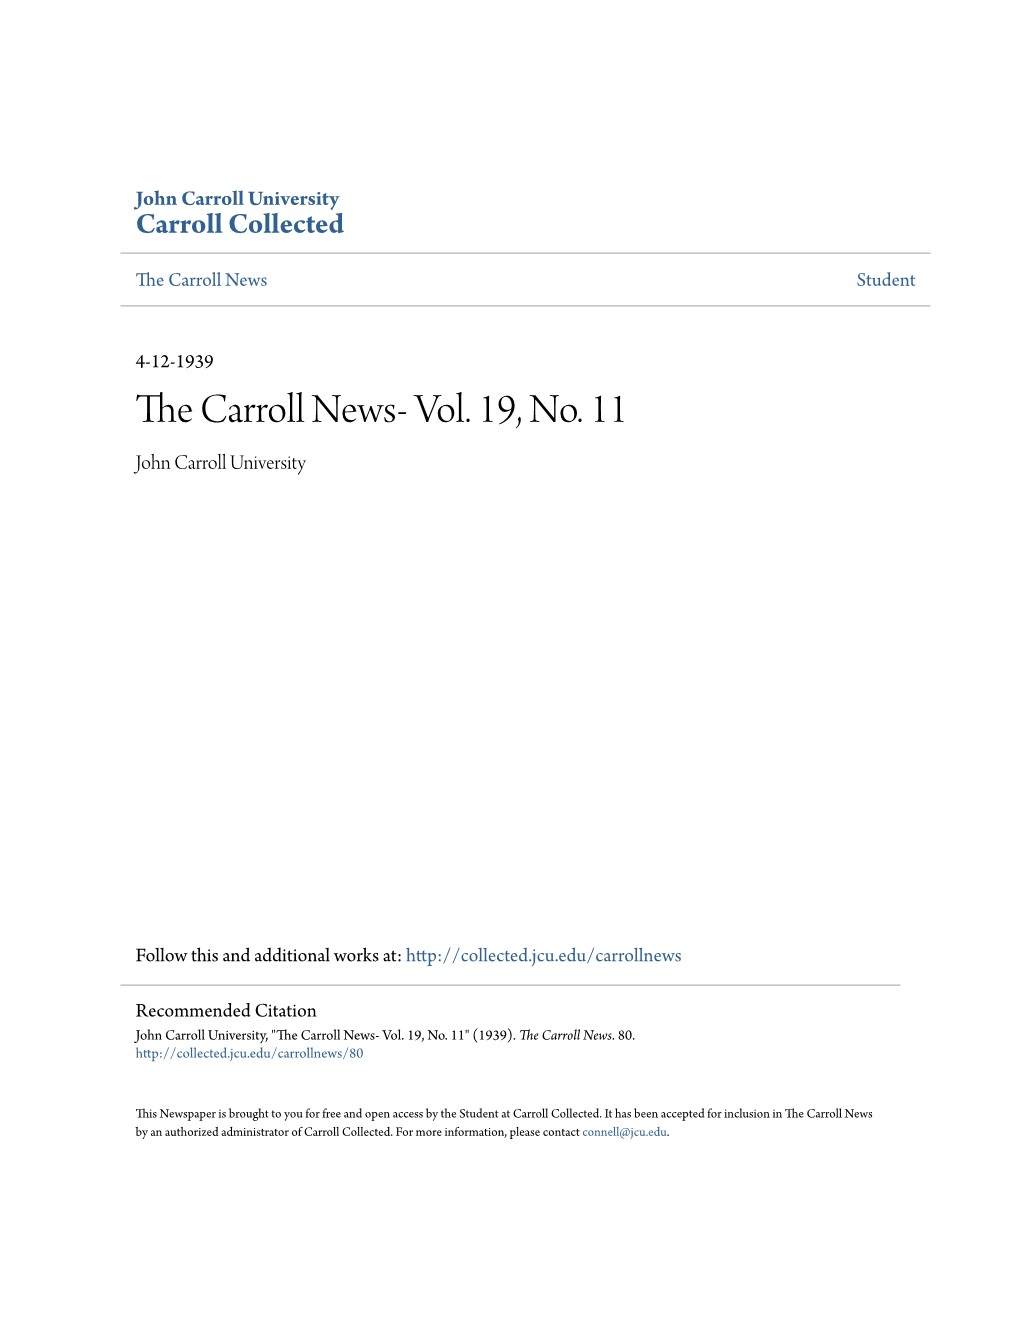 The Carroll News- Vol. 19, No. 11